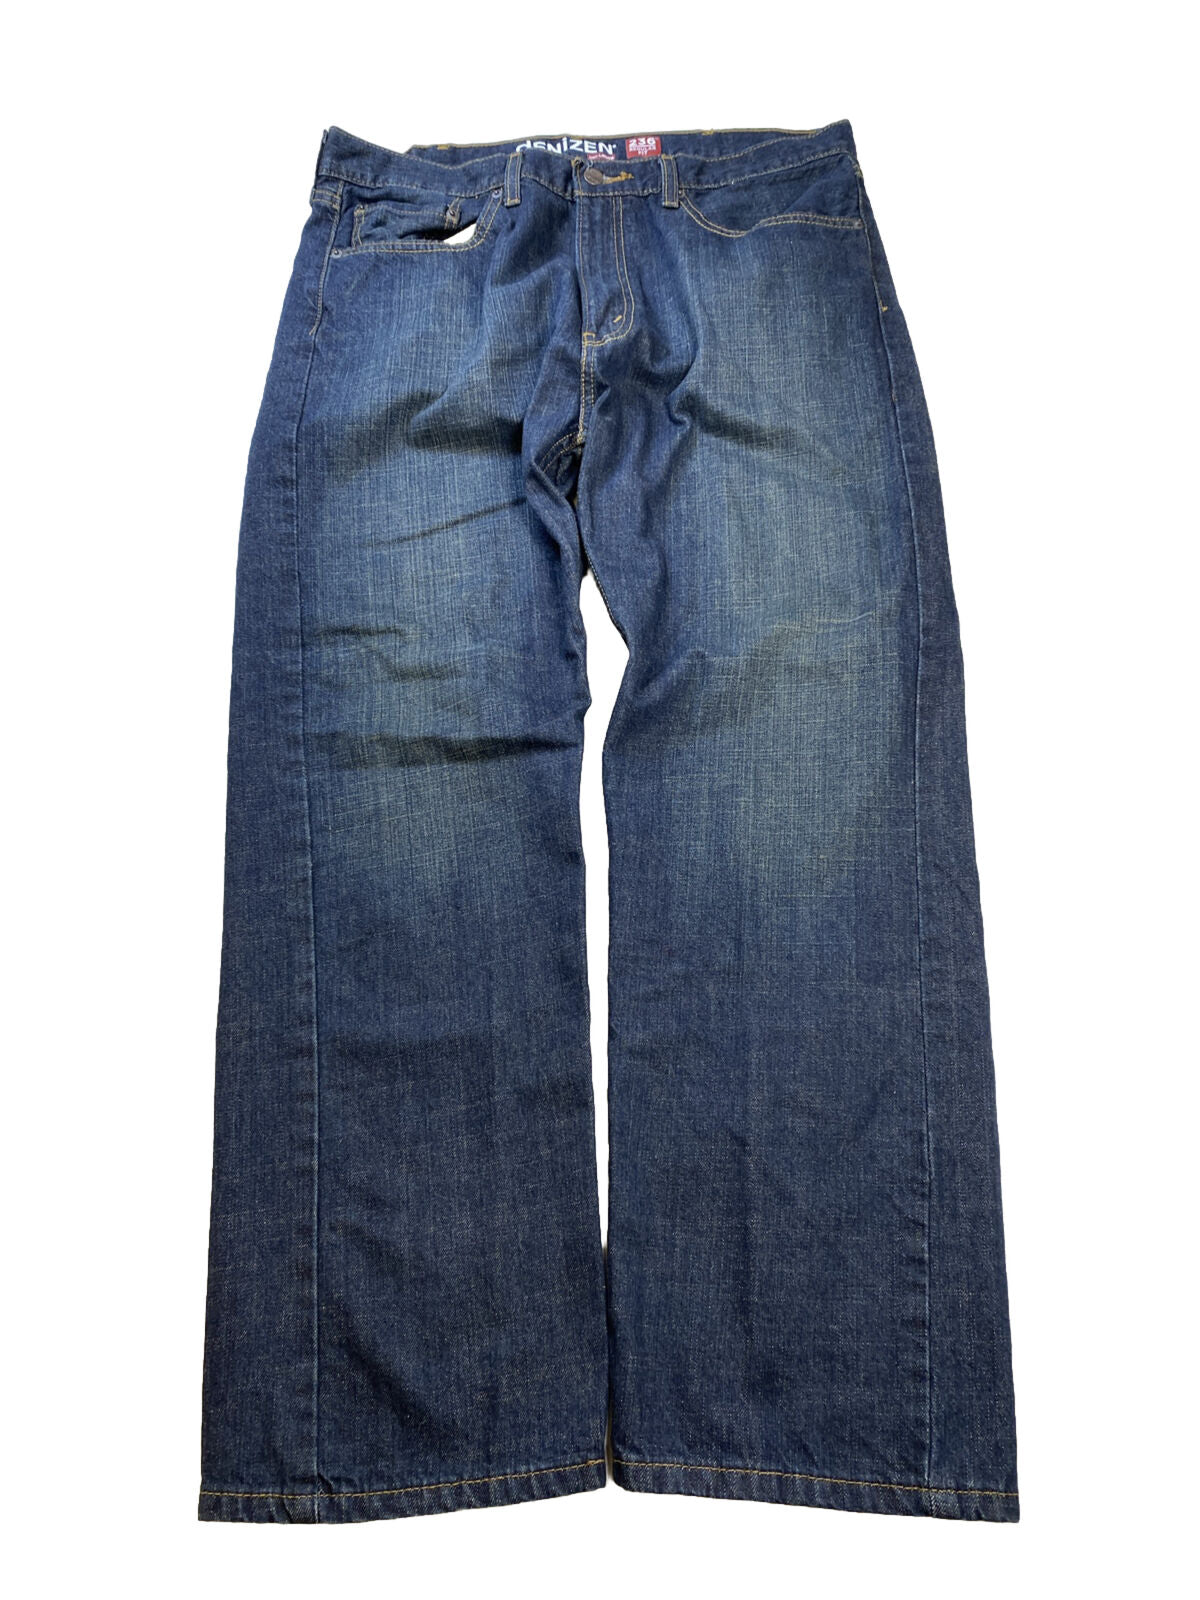 Levi's Denizen Jeans de pierna recta regular 236 con lavado oscuro para hombre - 38x30